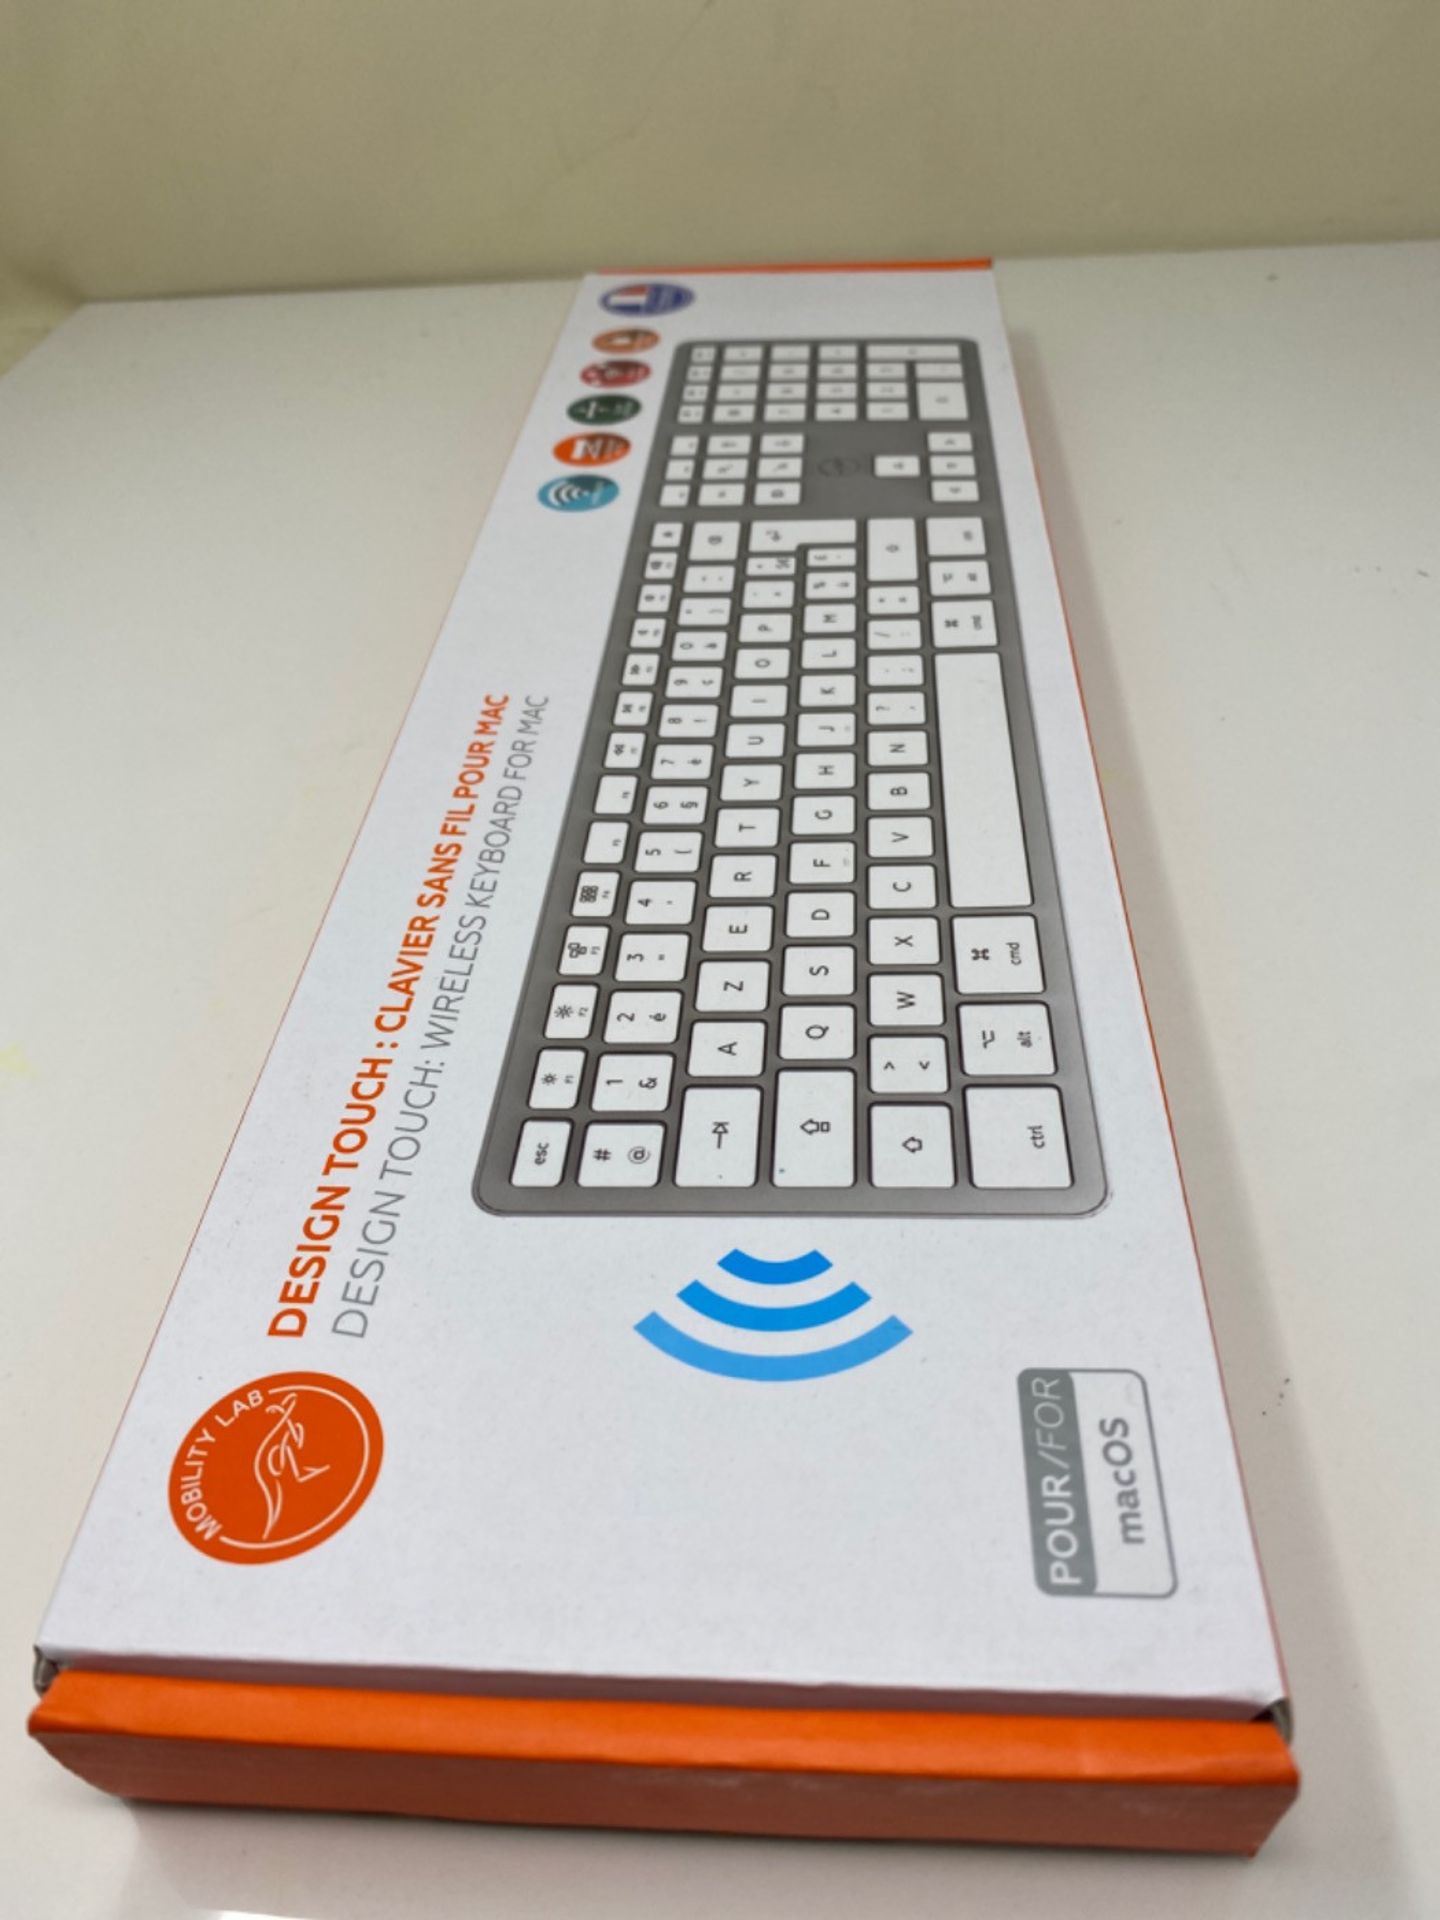 Mobility Lab Wireless French AZERTY Keyboard for Mac  White and Silver - Image 2 of 3